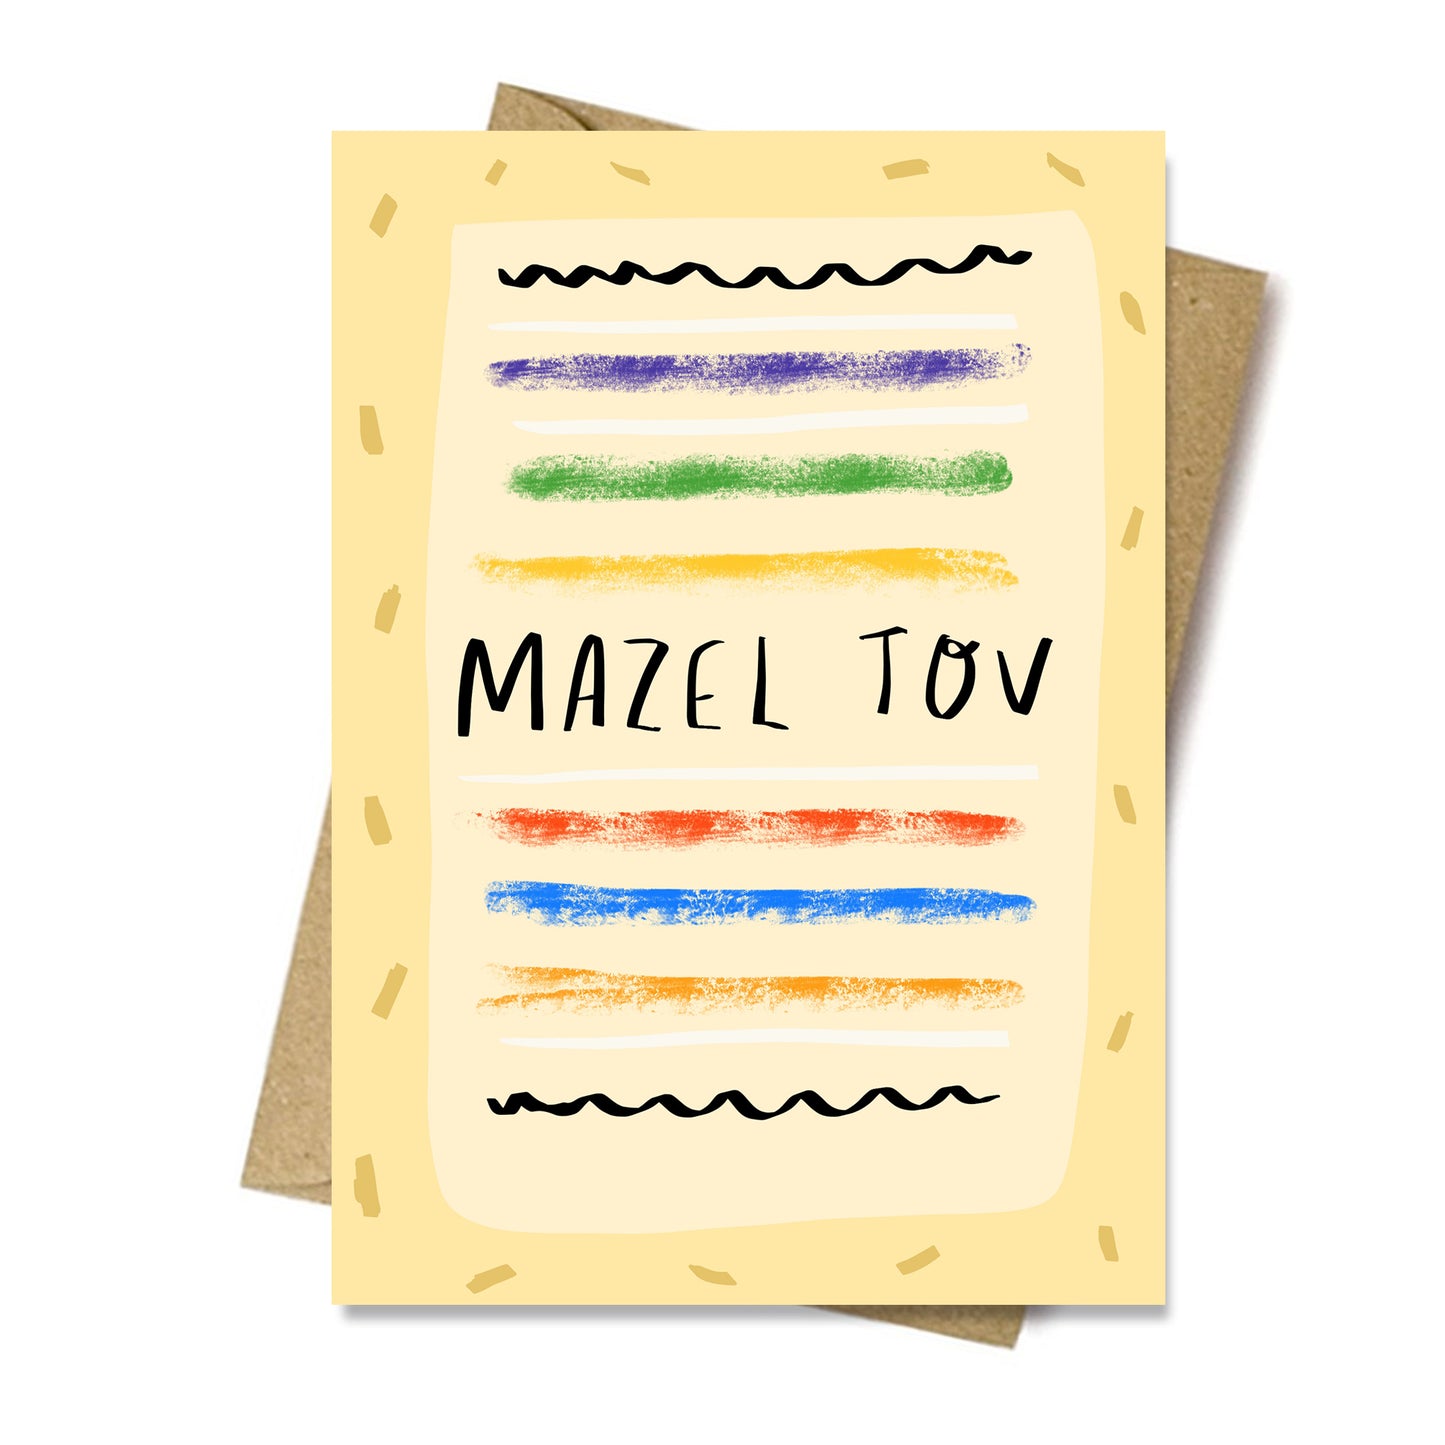 MAZEL TOV card